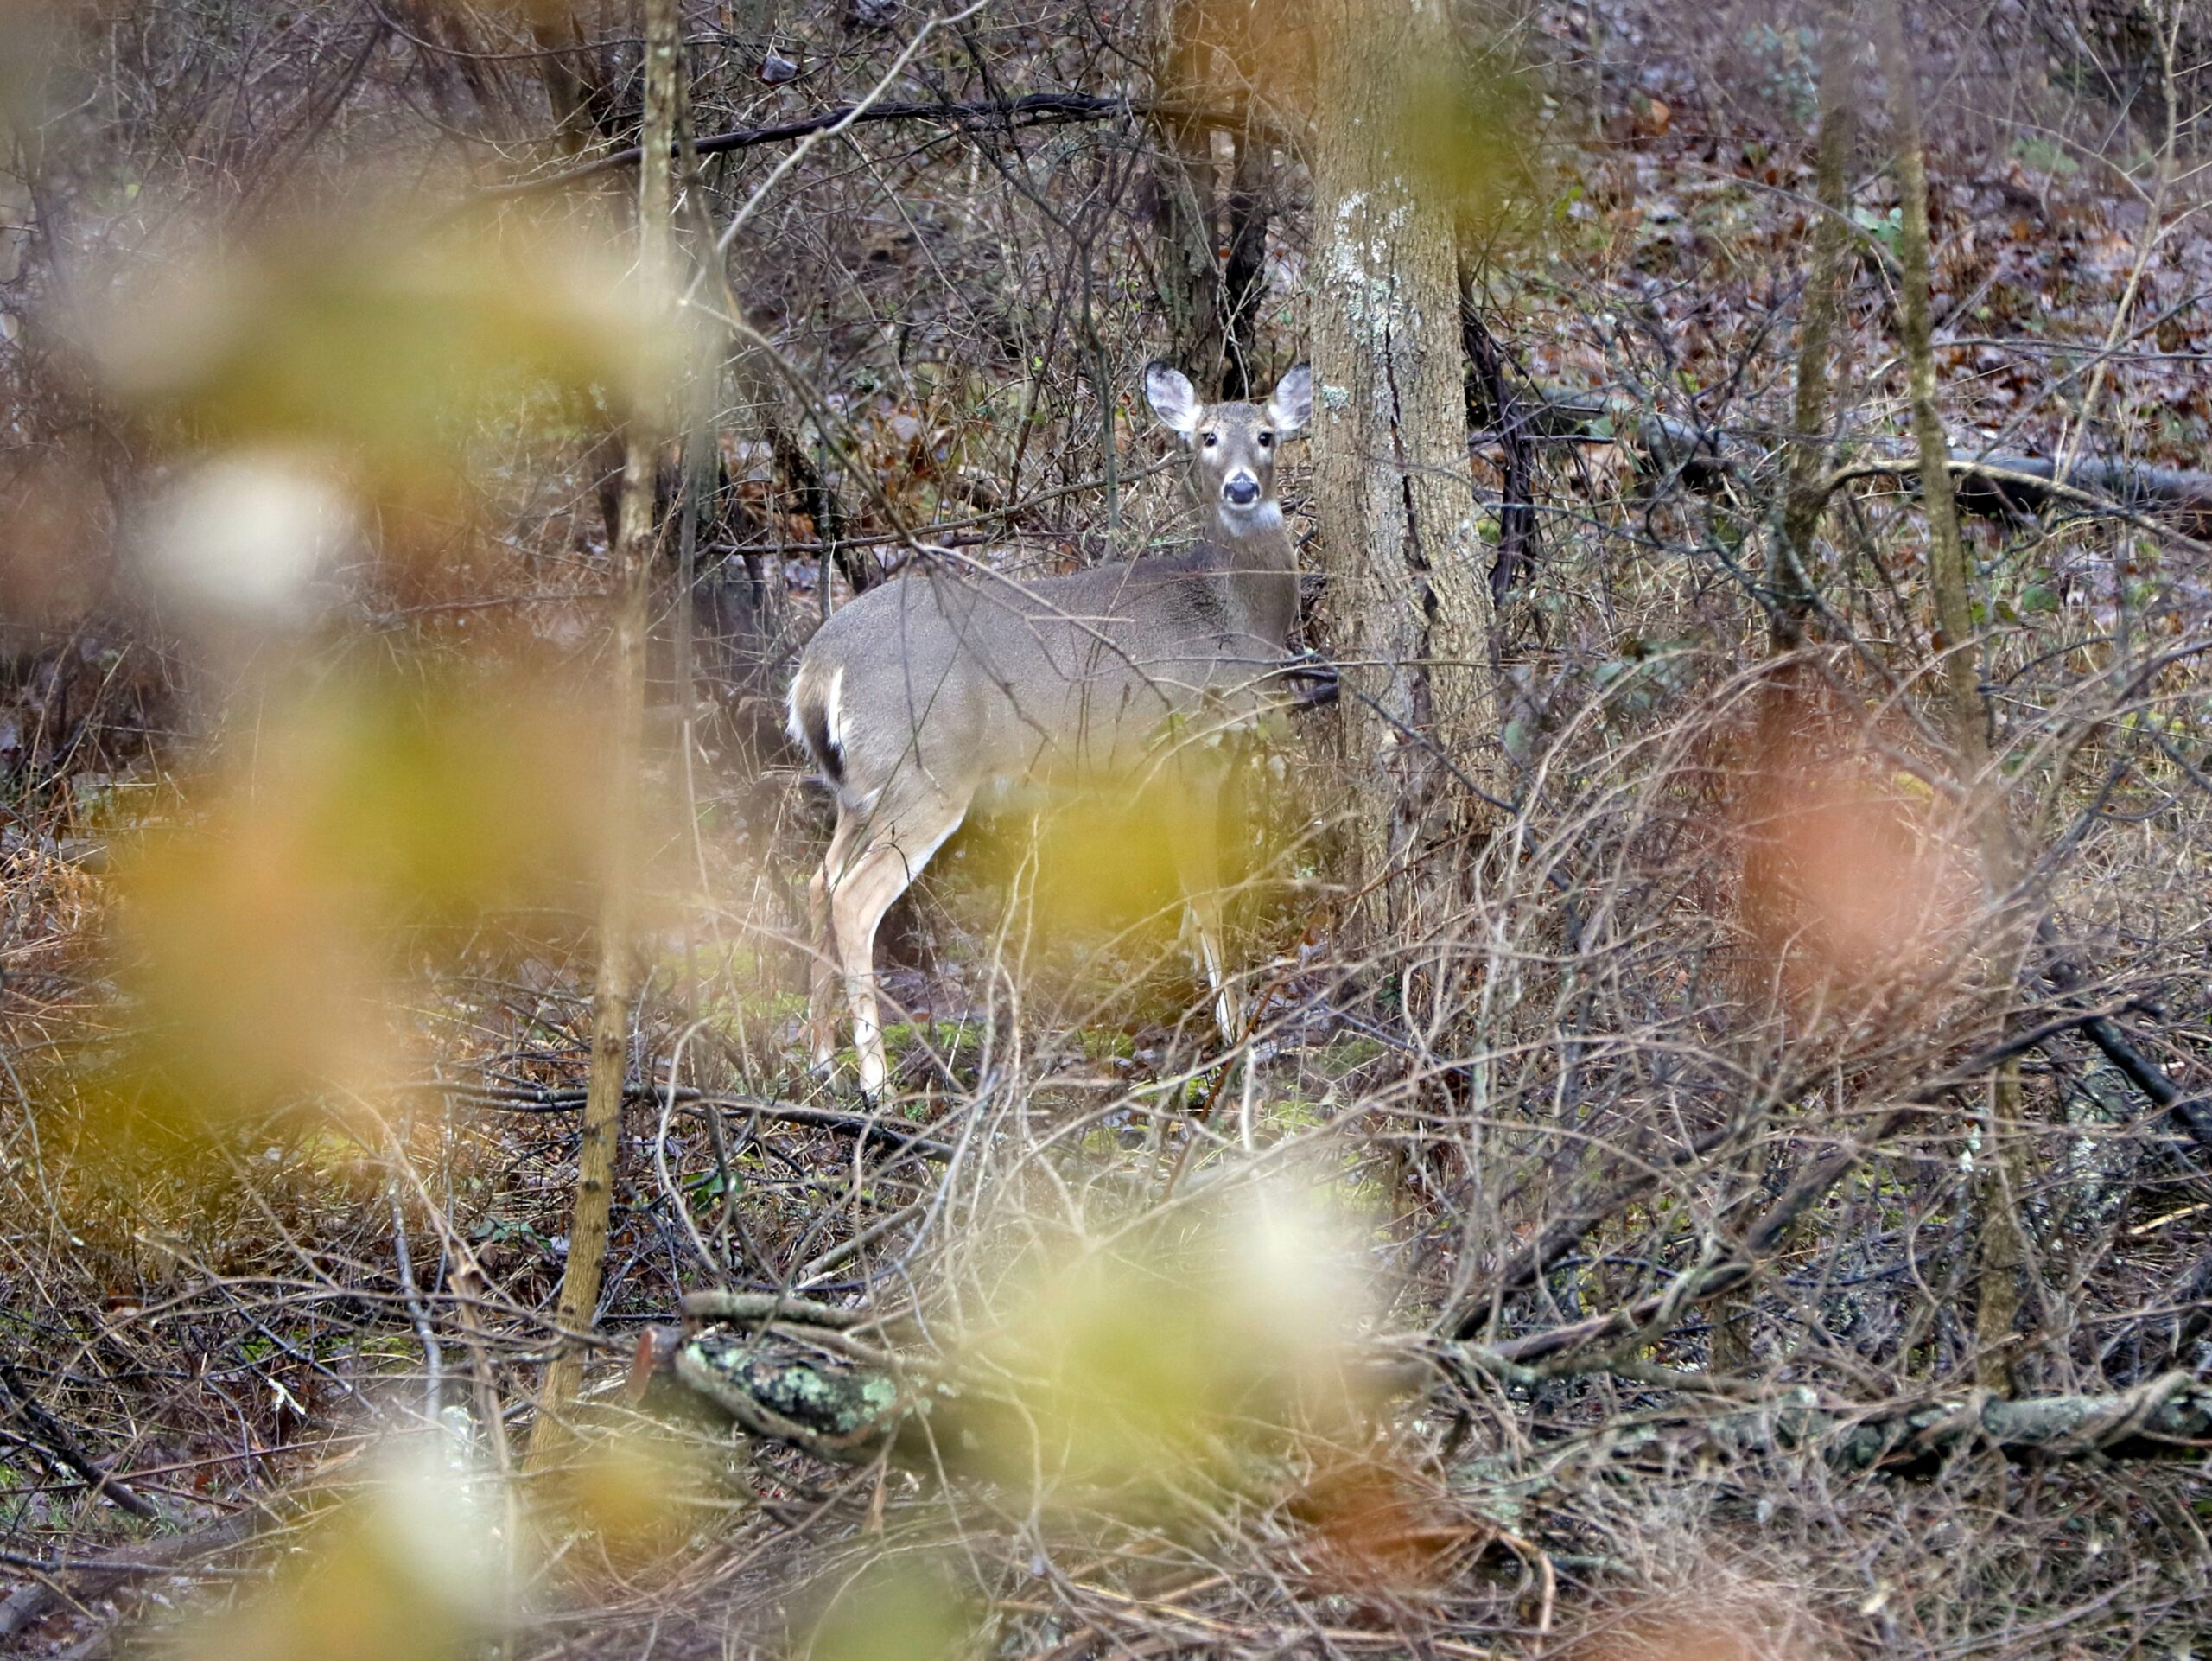 A deer peers through the woods